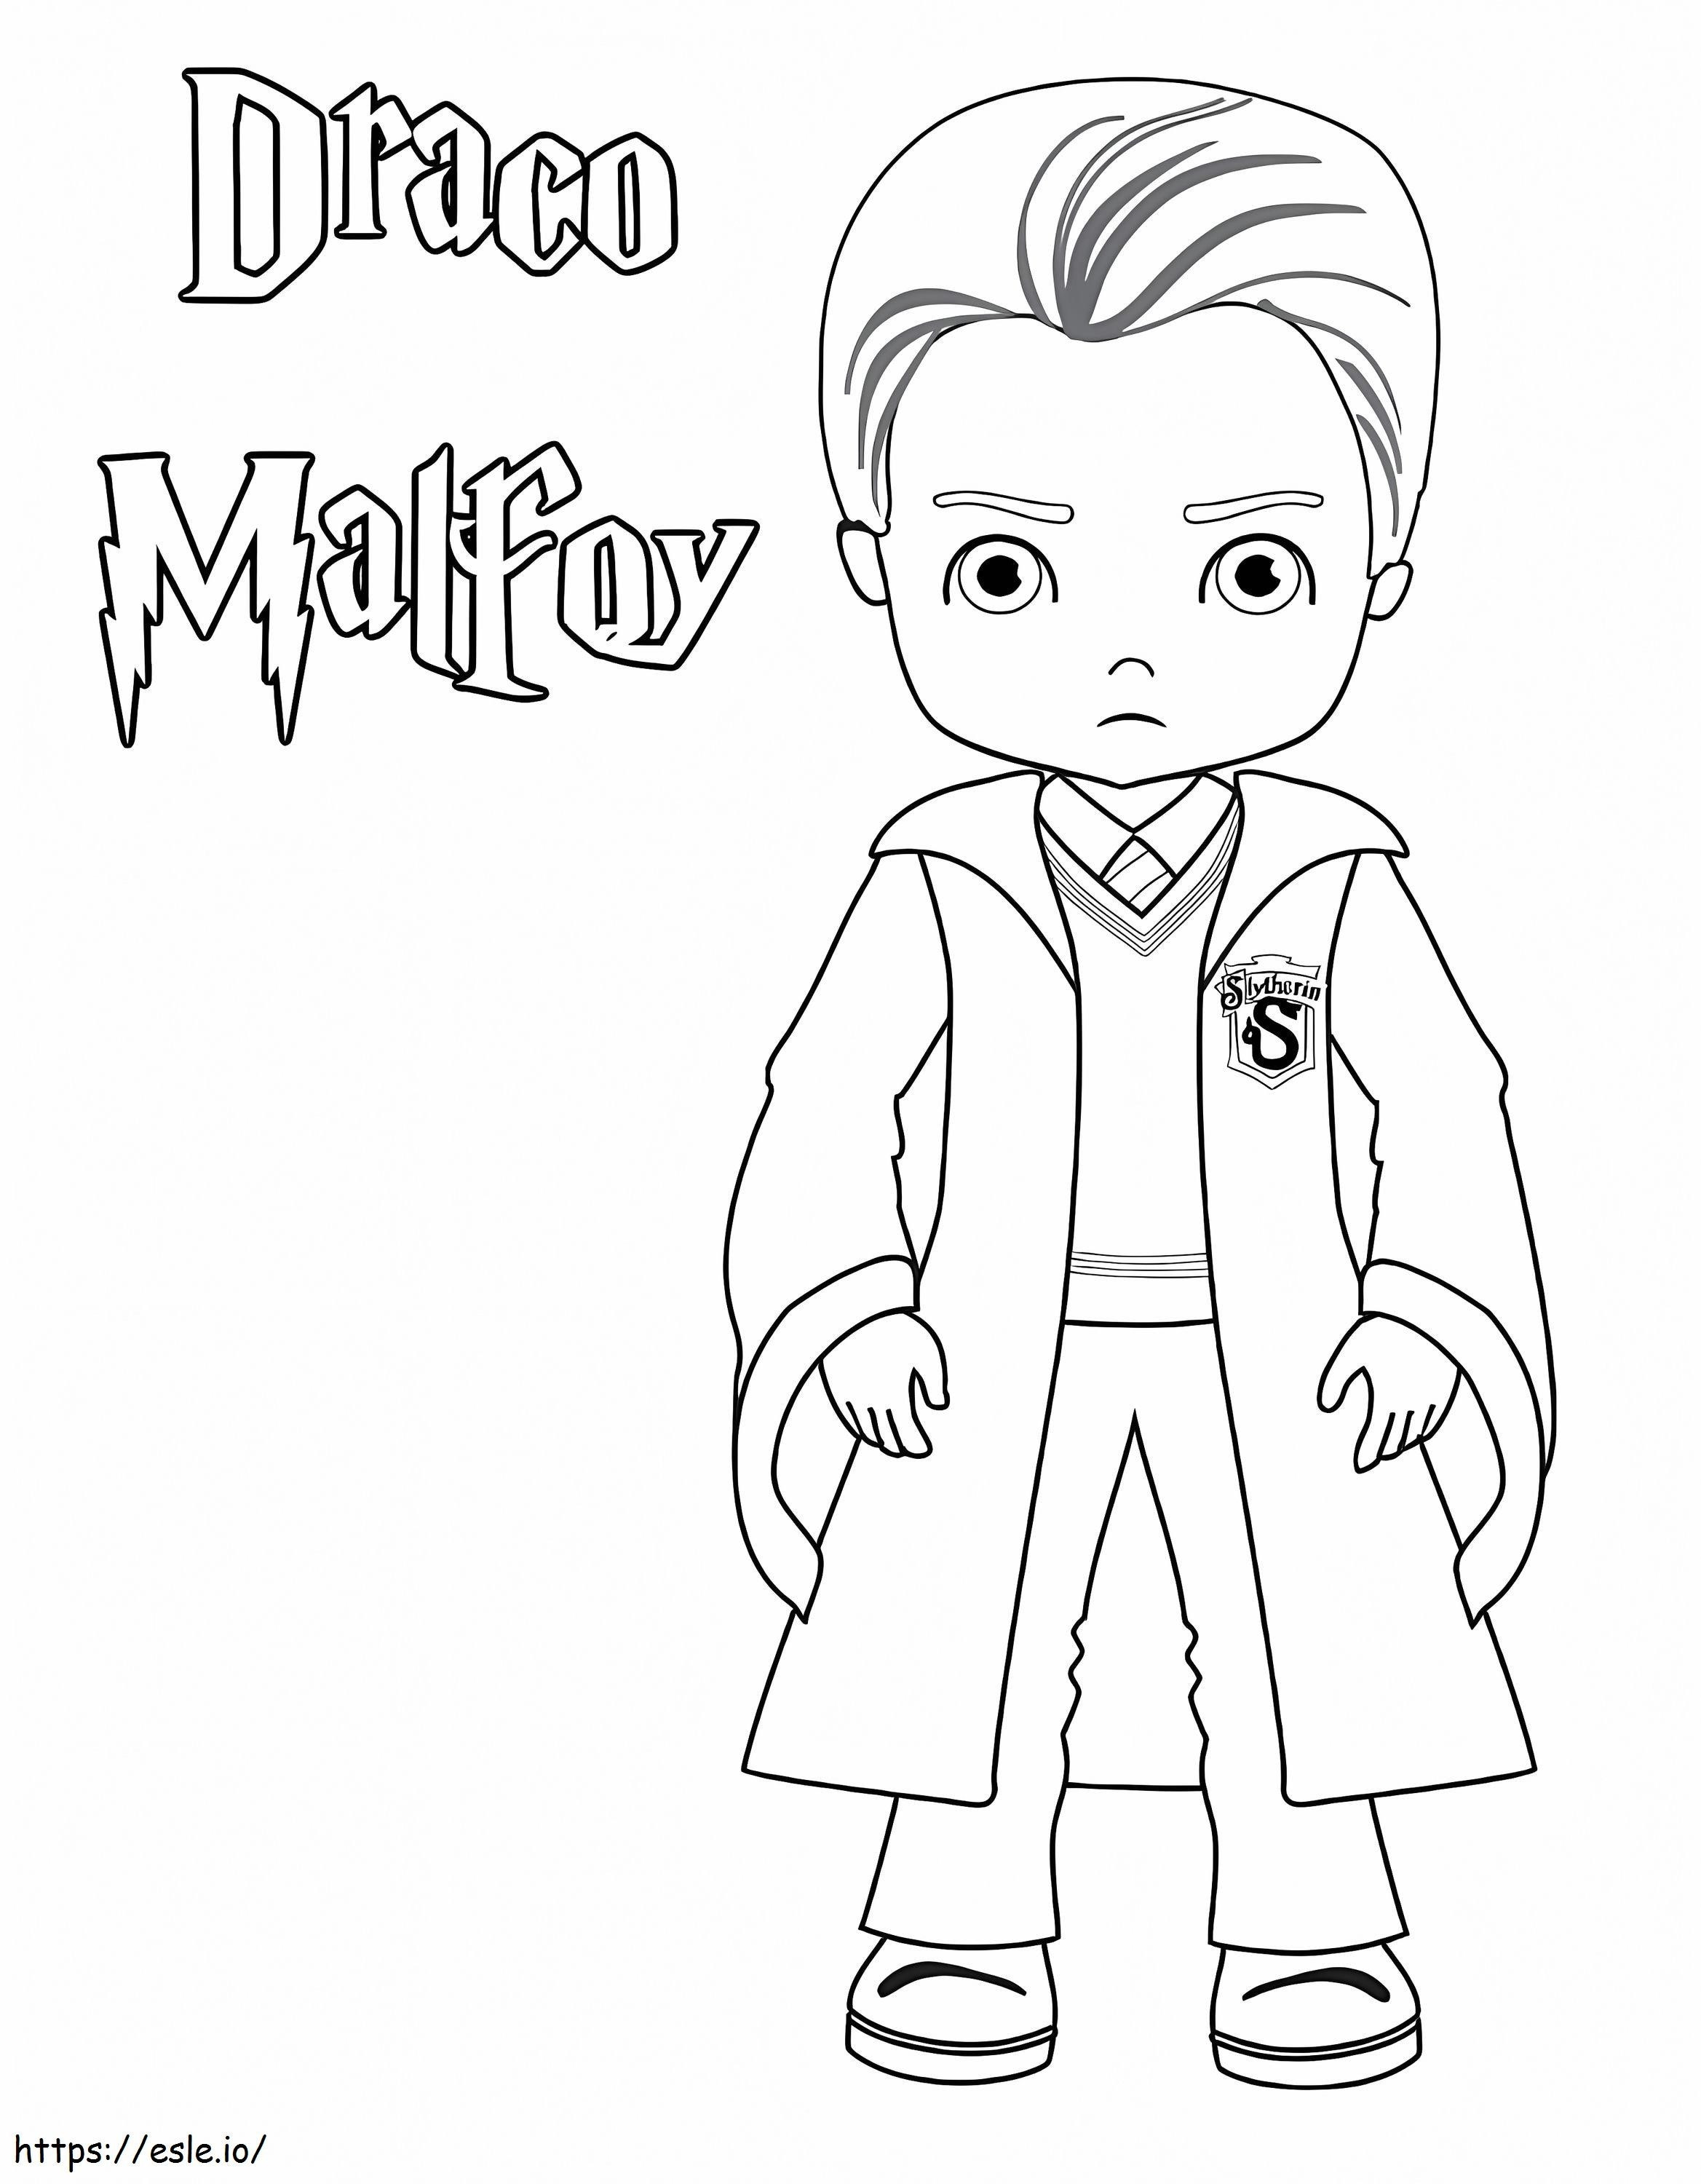 Draco Malfoy kolorowanka